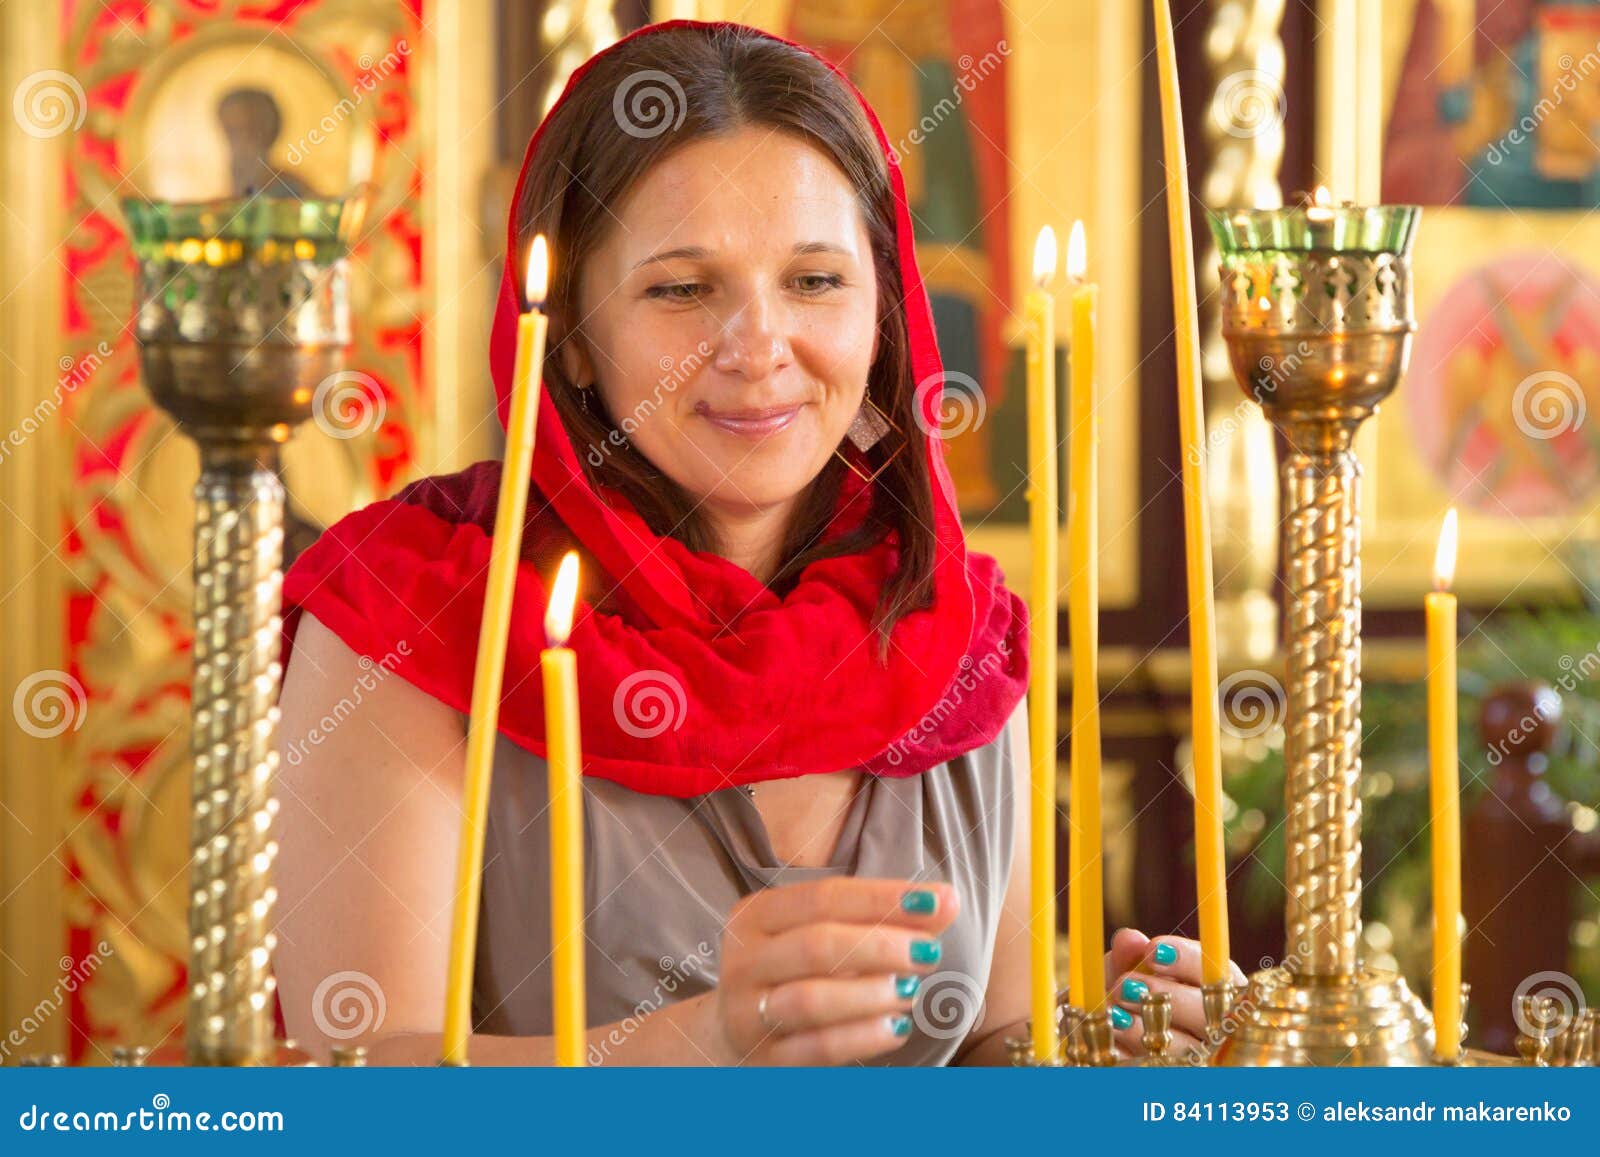 Το όμορφο κορίτσι σε ένα κόκκινο μαντίλι βάζει τα κεριά σε μια ορθόδοξη  χριστιανική εκκλησία Στοκ Εικόνα - εικόνα από : 84113953